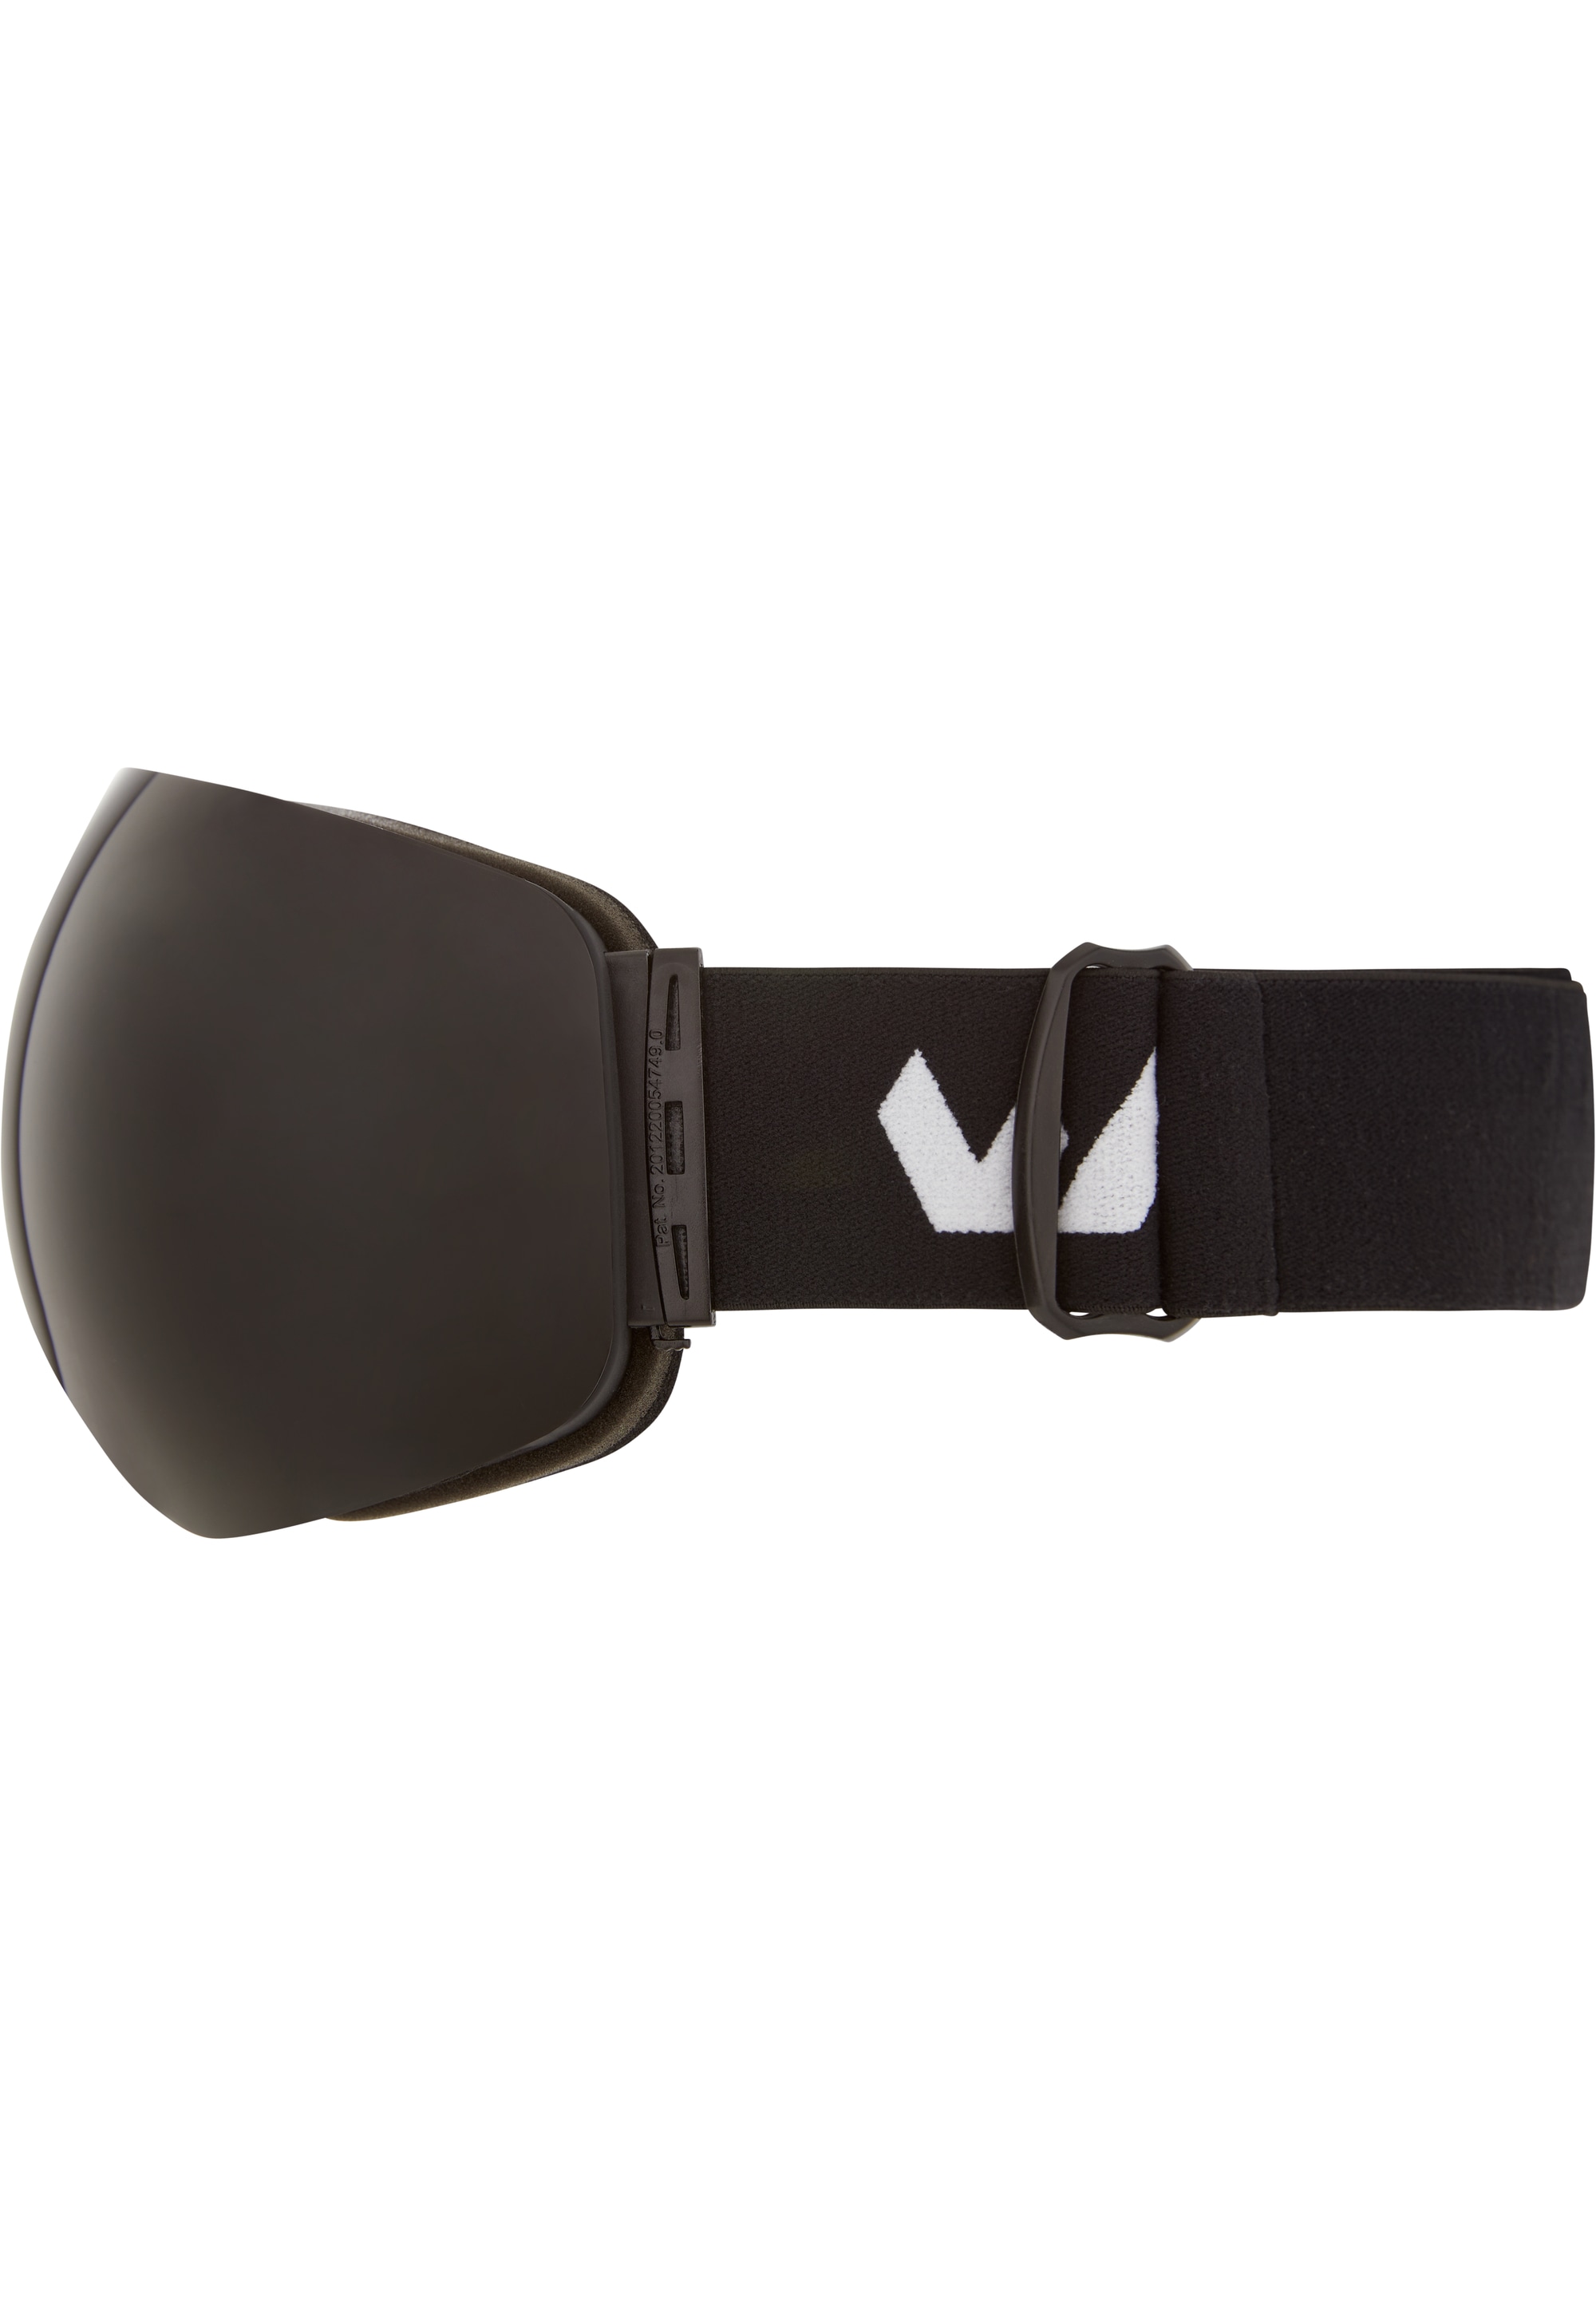 WHISTLER Skibrille »WS6100«, mit praktischer Anti-Fog-Beschichtung | BAUR